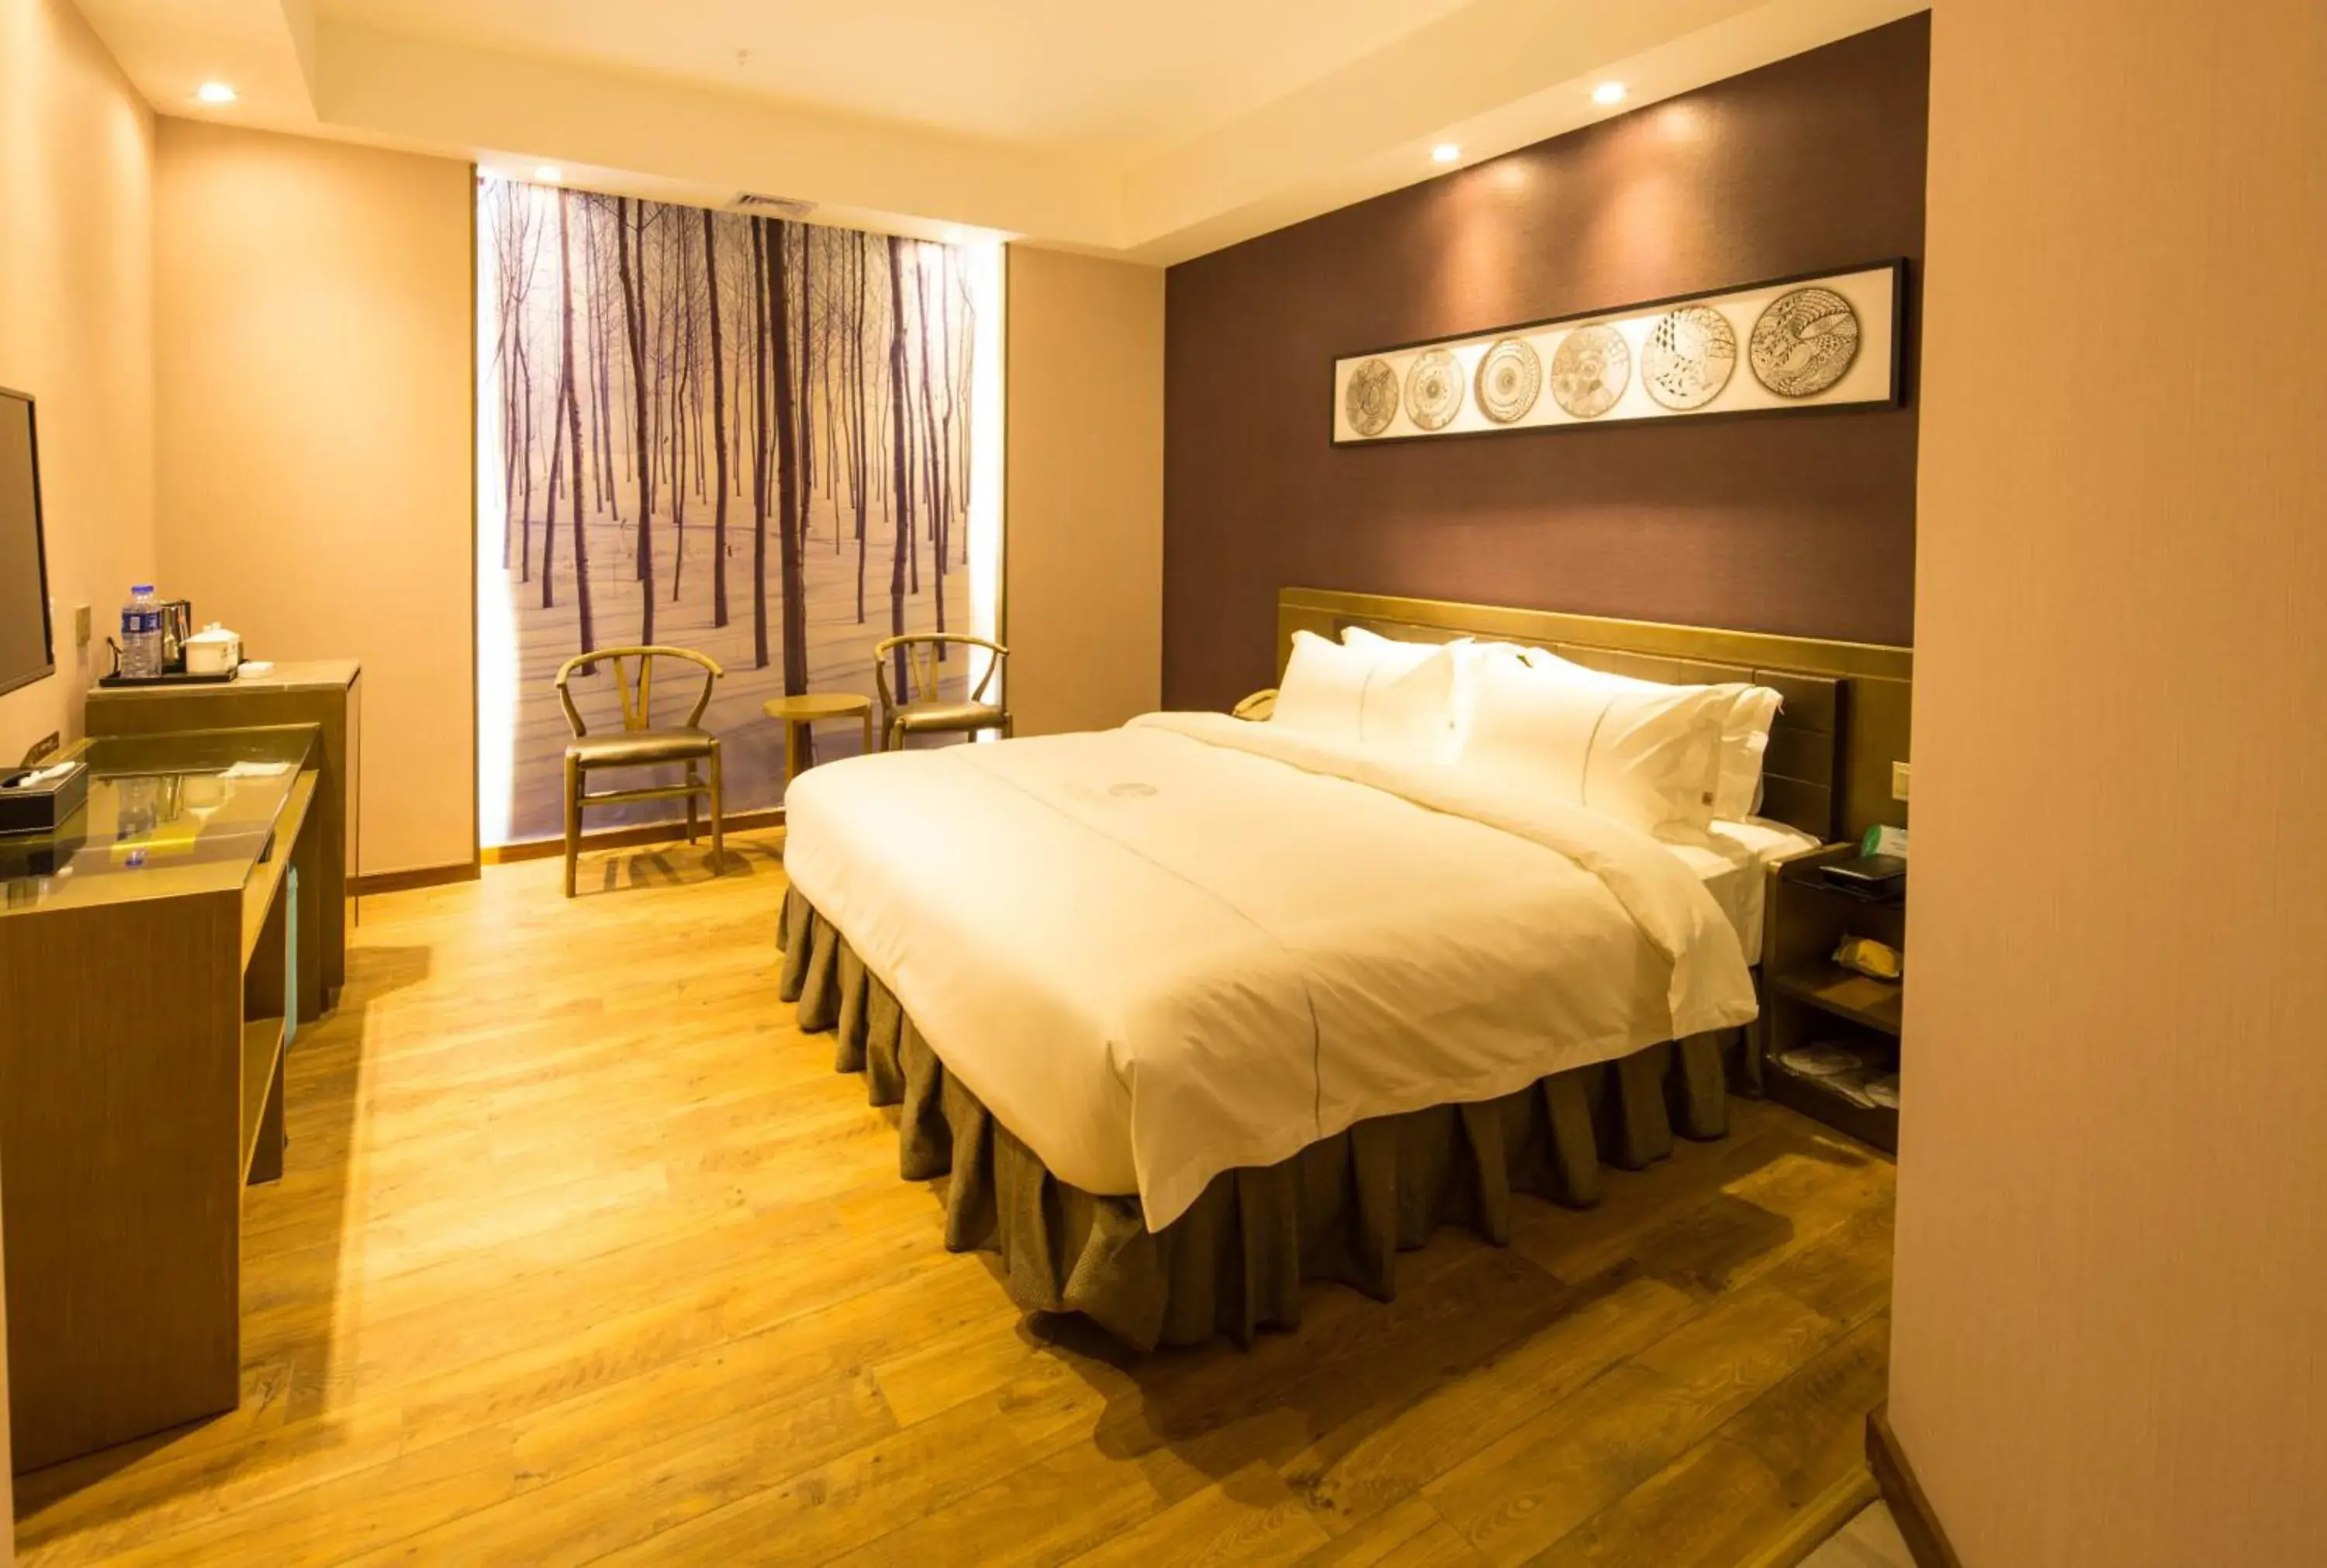 bunk bed, Room Photo in INSAIL Hotel (Shenzhen Dongmen Branch)